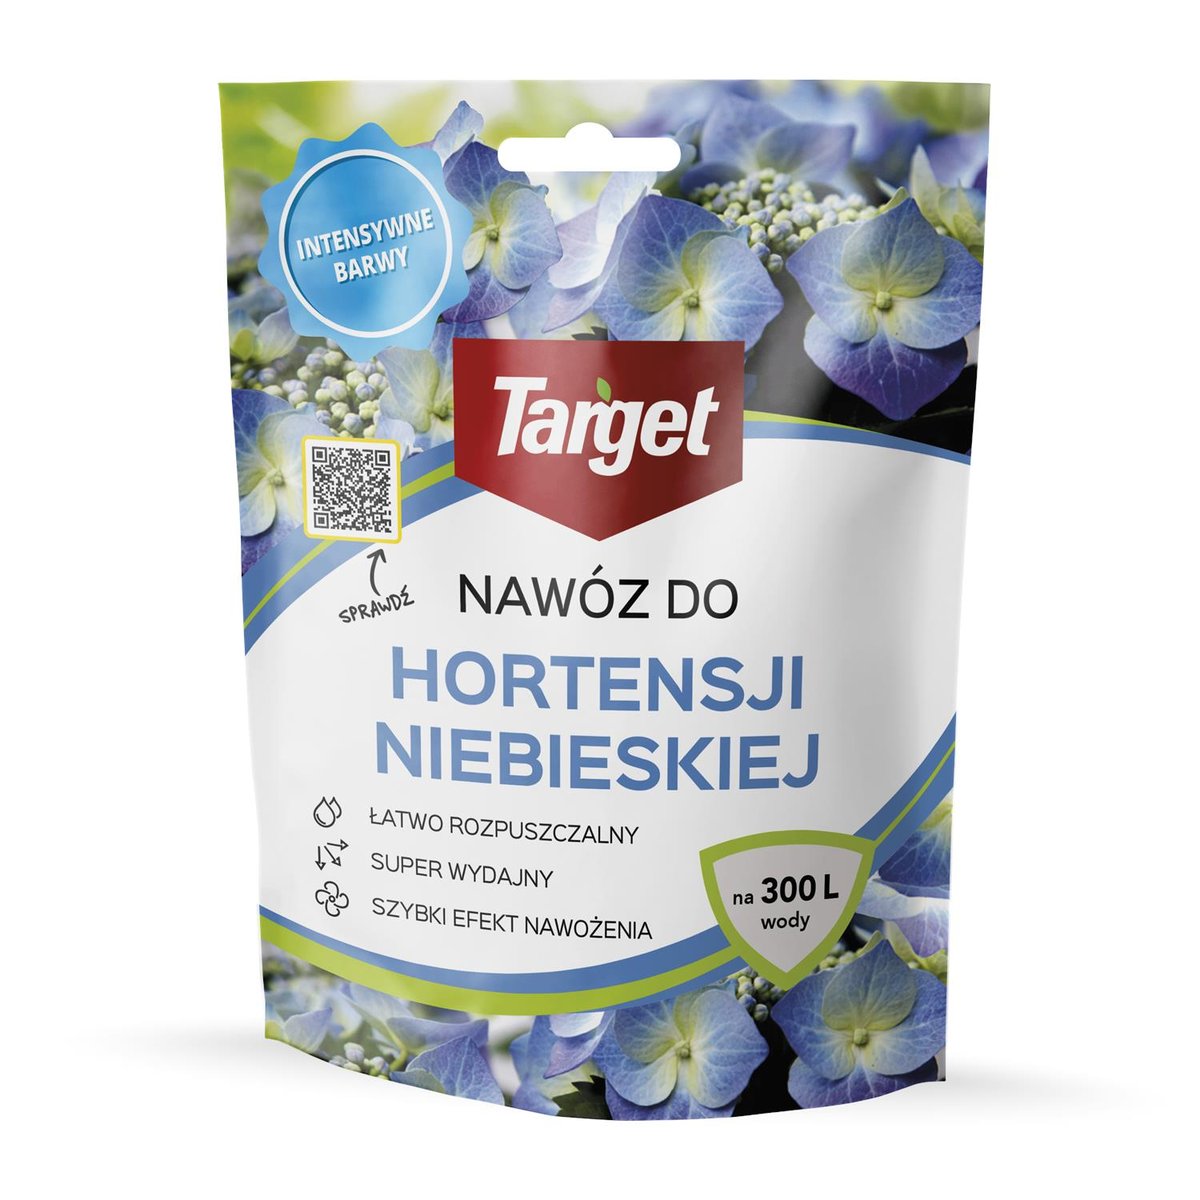 Target Nawóz do hortensji INTENSYWNE BARWY 0,15 kg